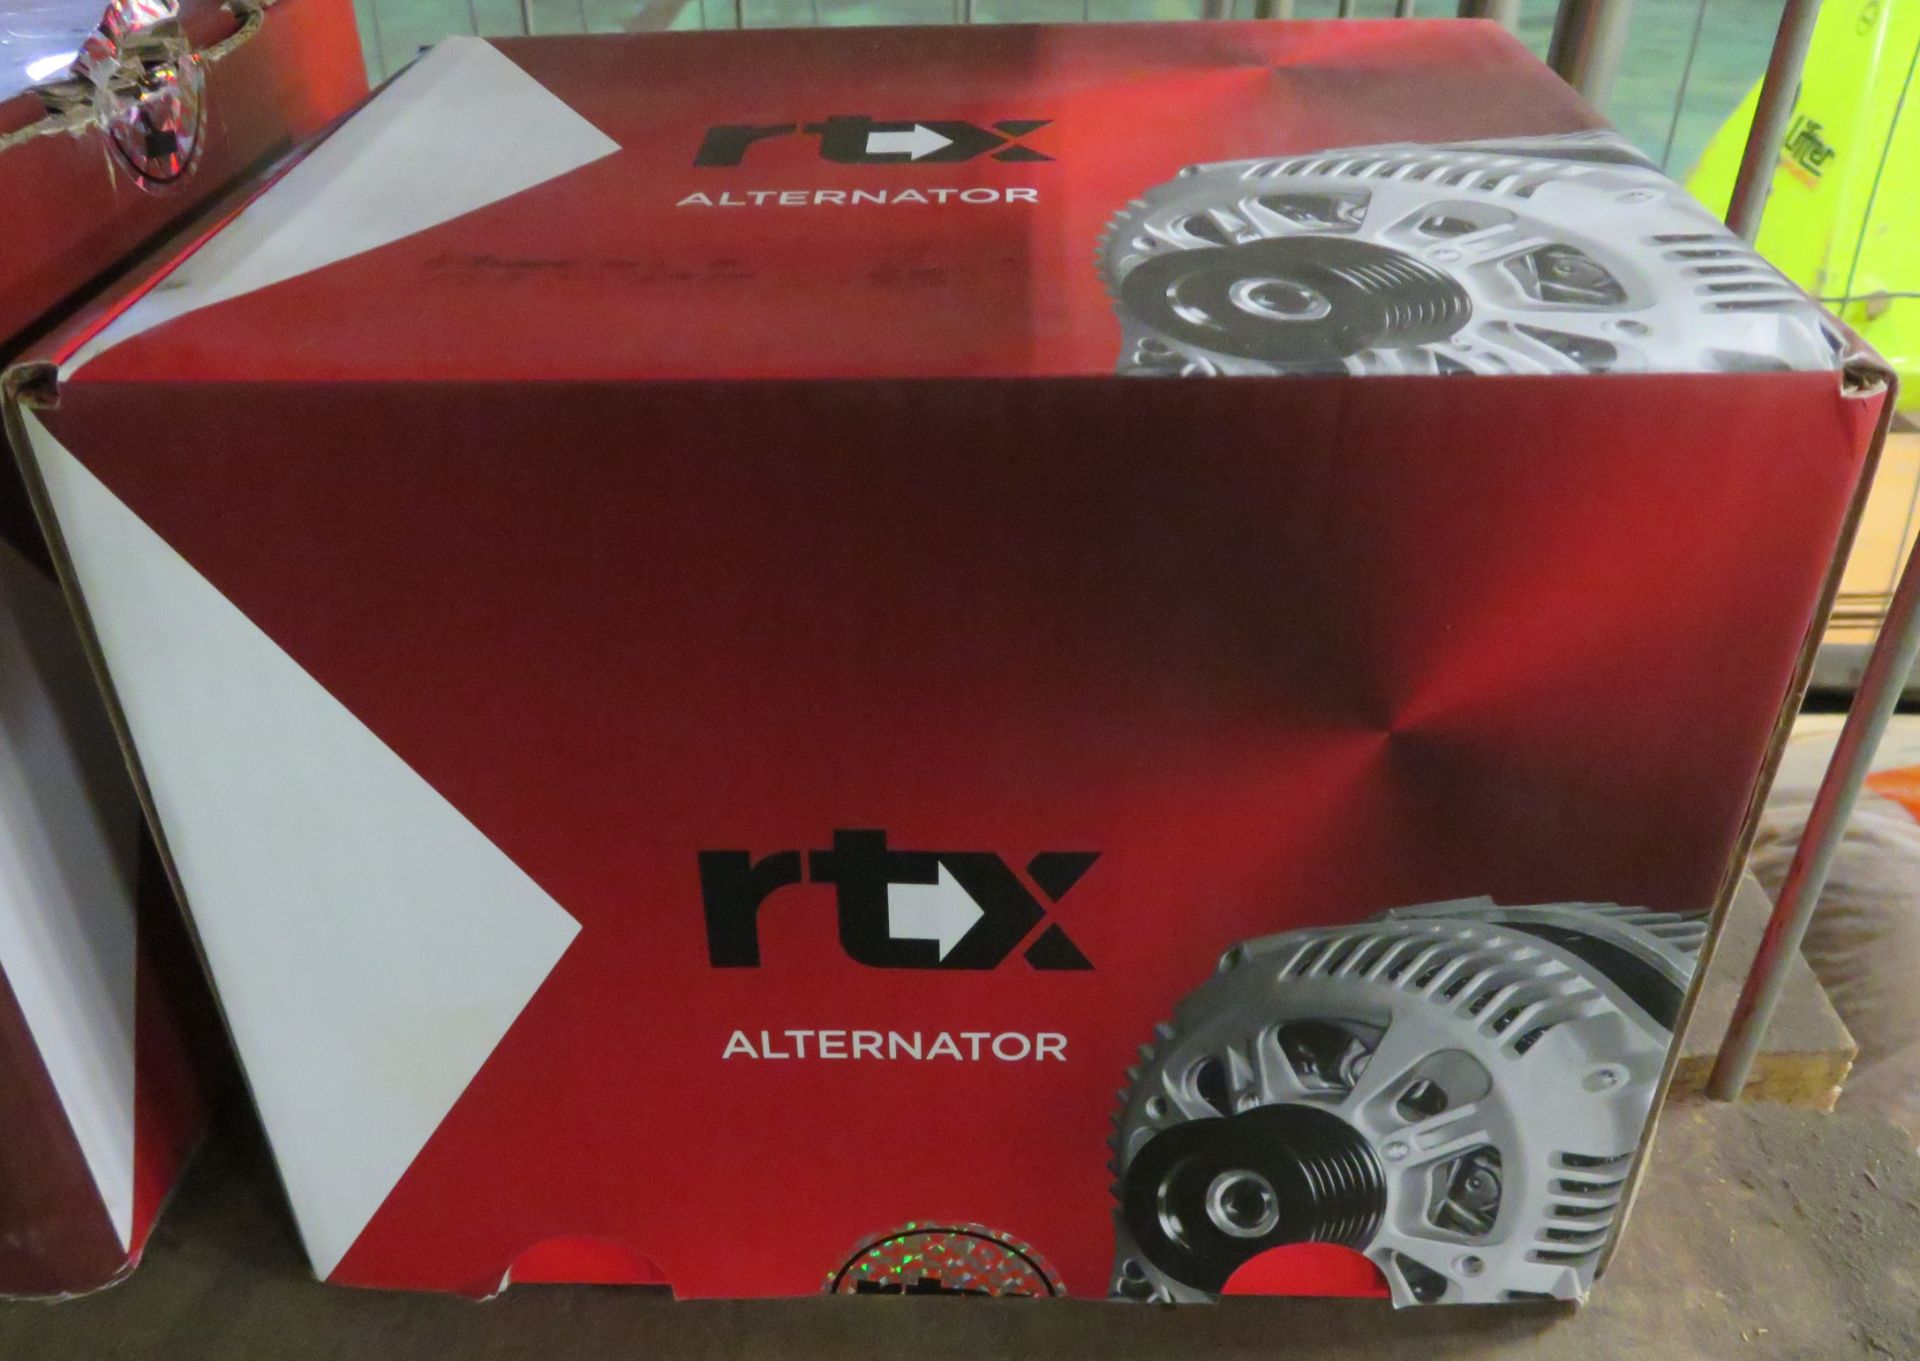 RTX alternator - AA5404